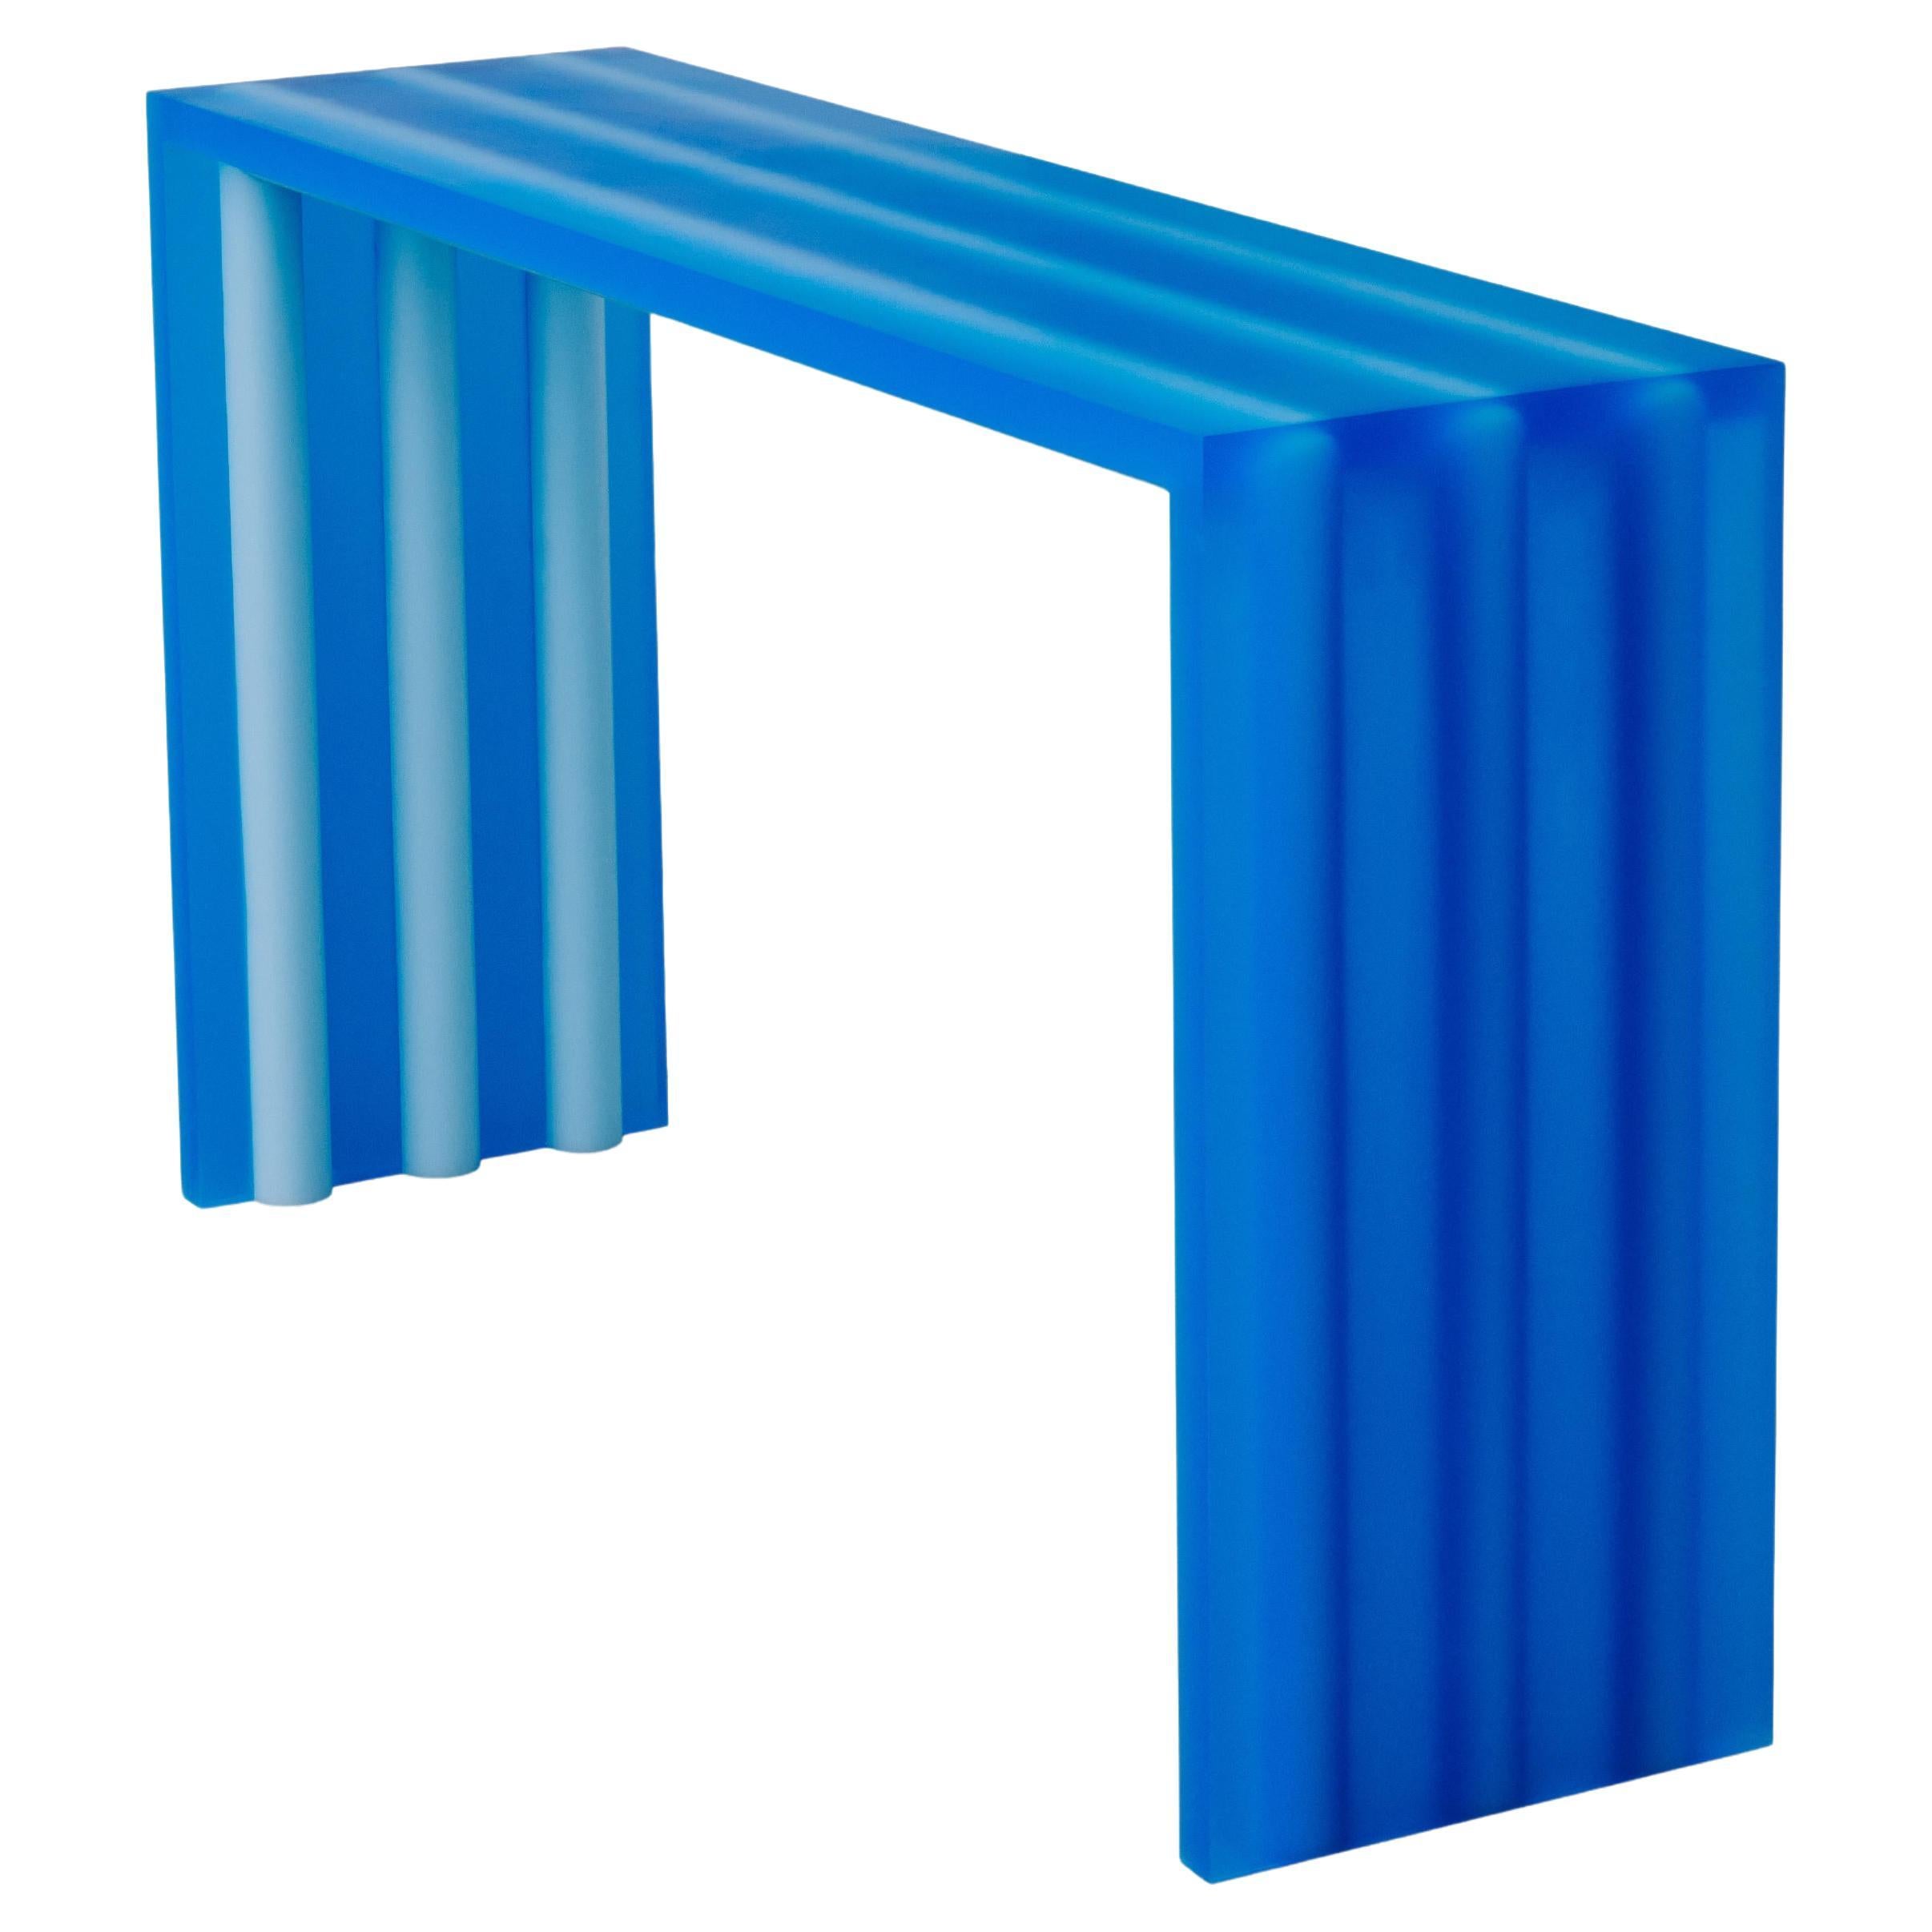 Console/table console en résine tube bleue par Facture, REP par Tuleste Factory